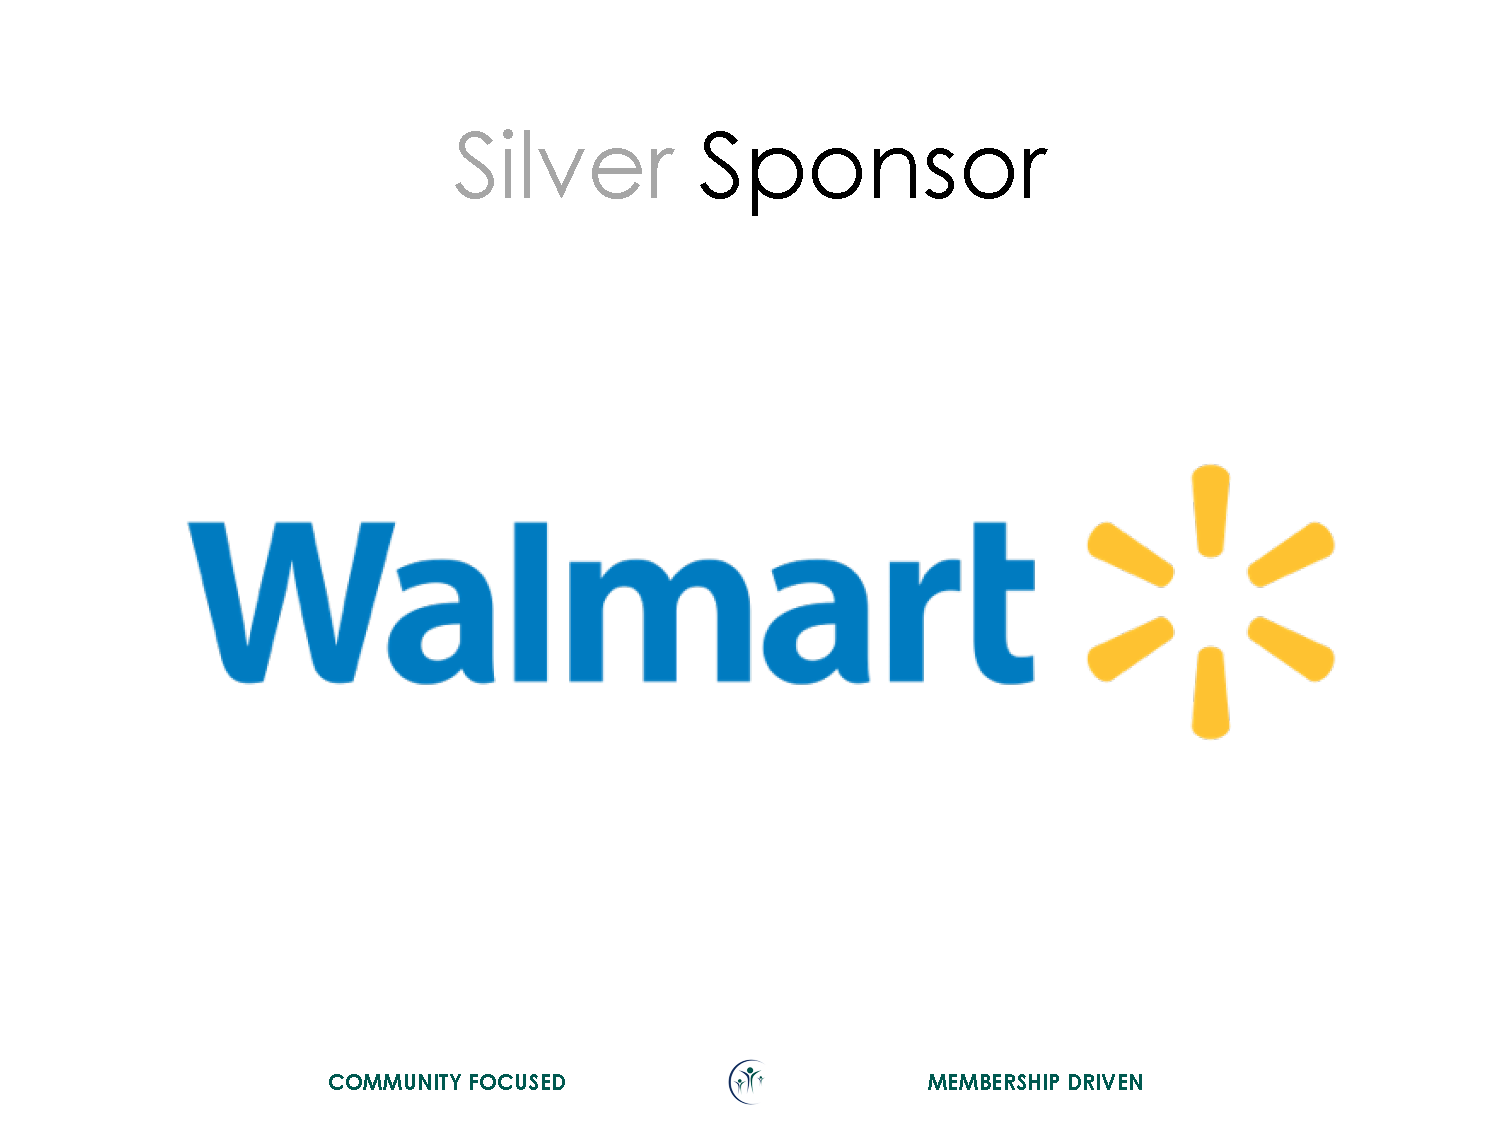 Walmart Silver Sponsor